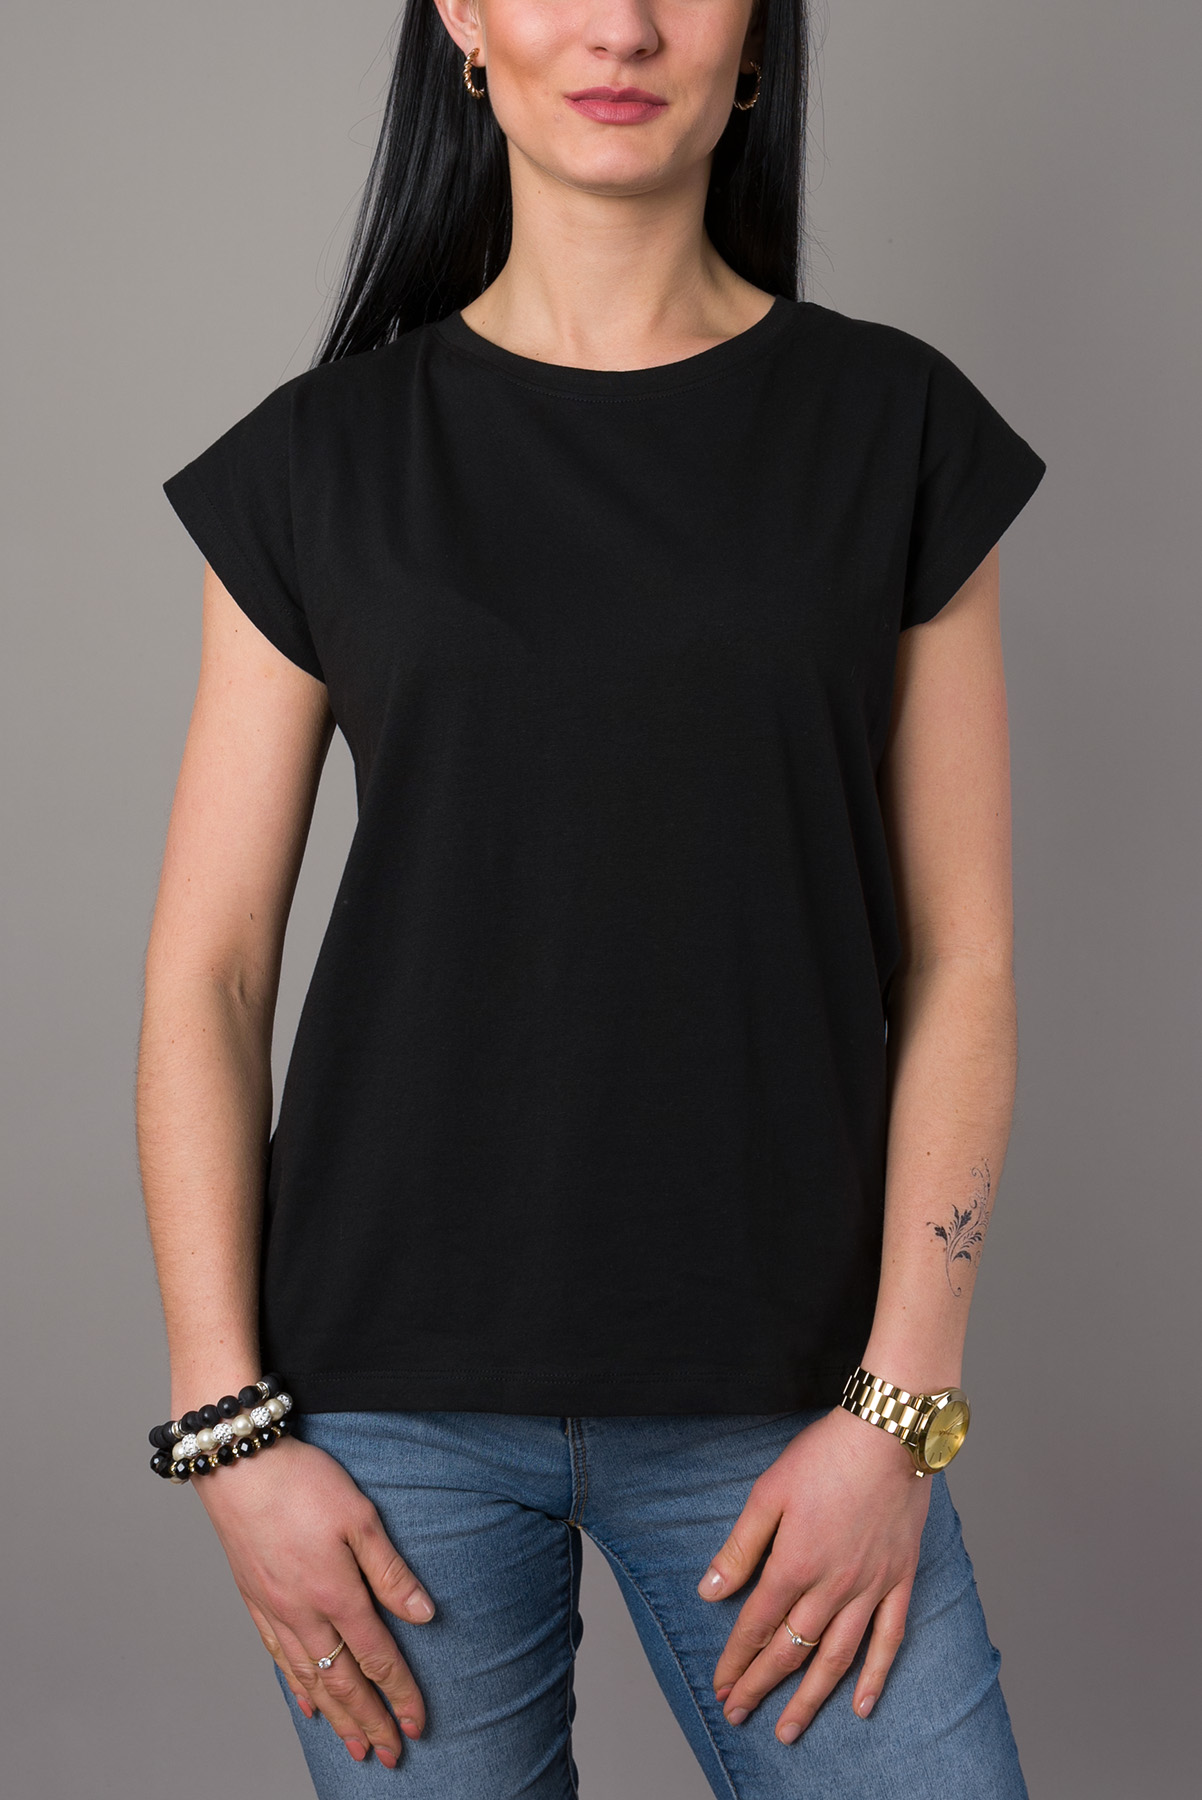 Dámske bavlnené tričko CLASSIC - čierne